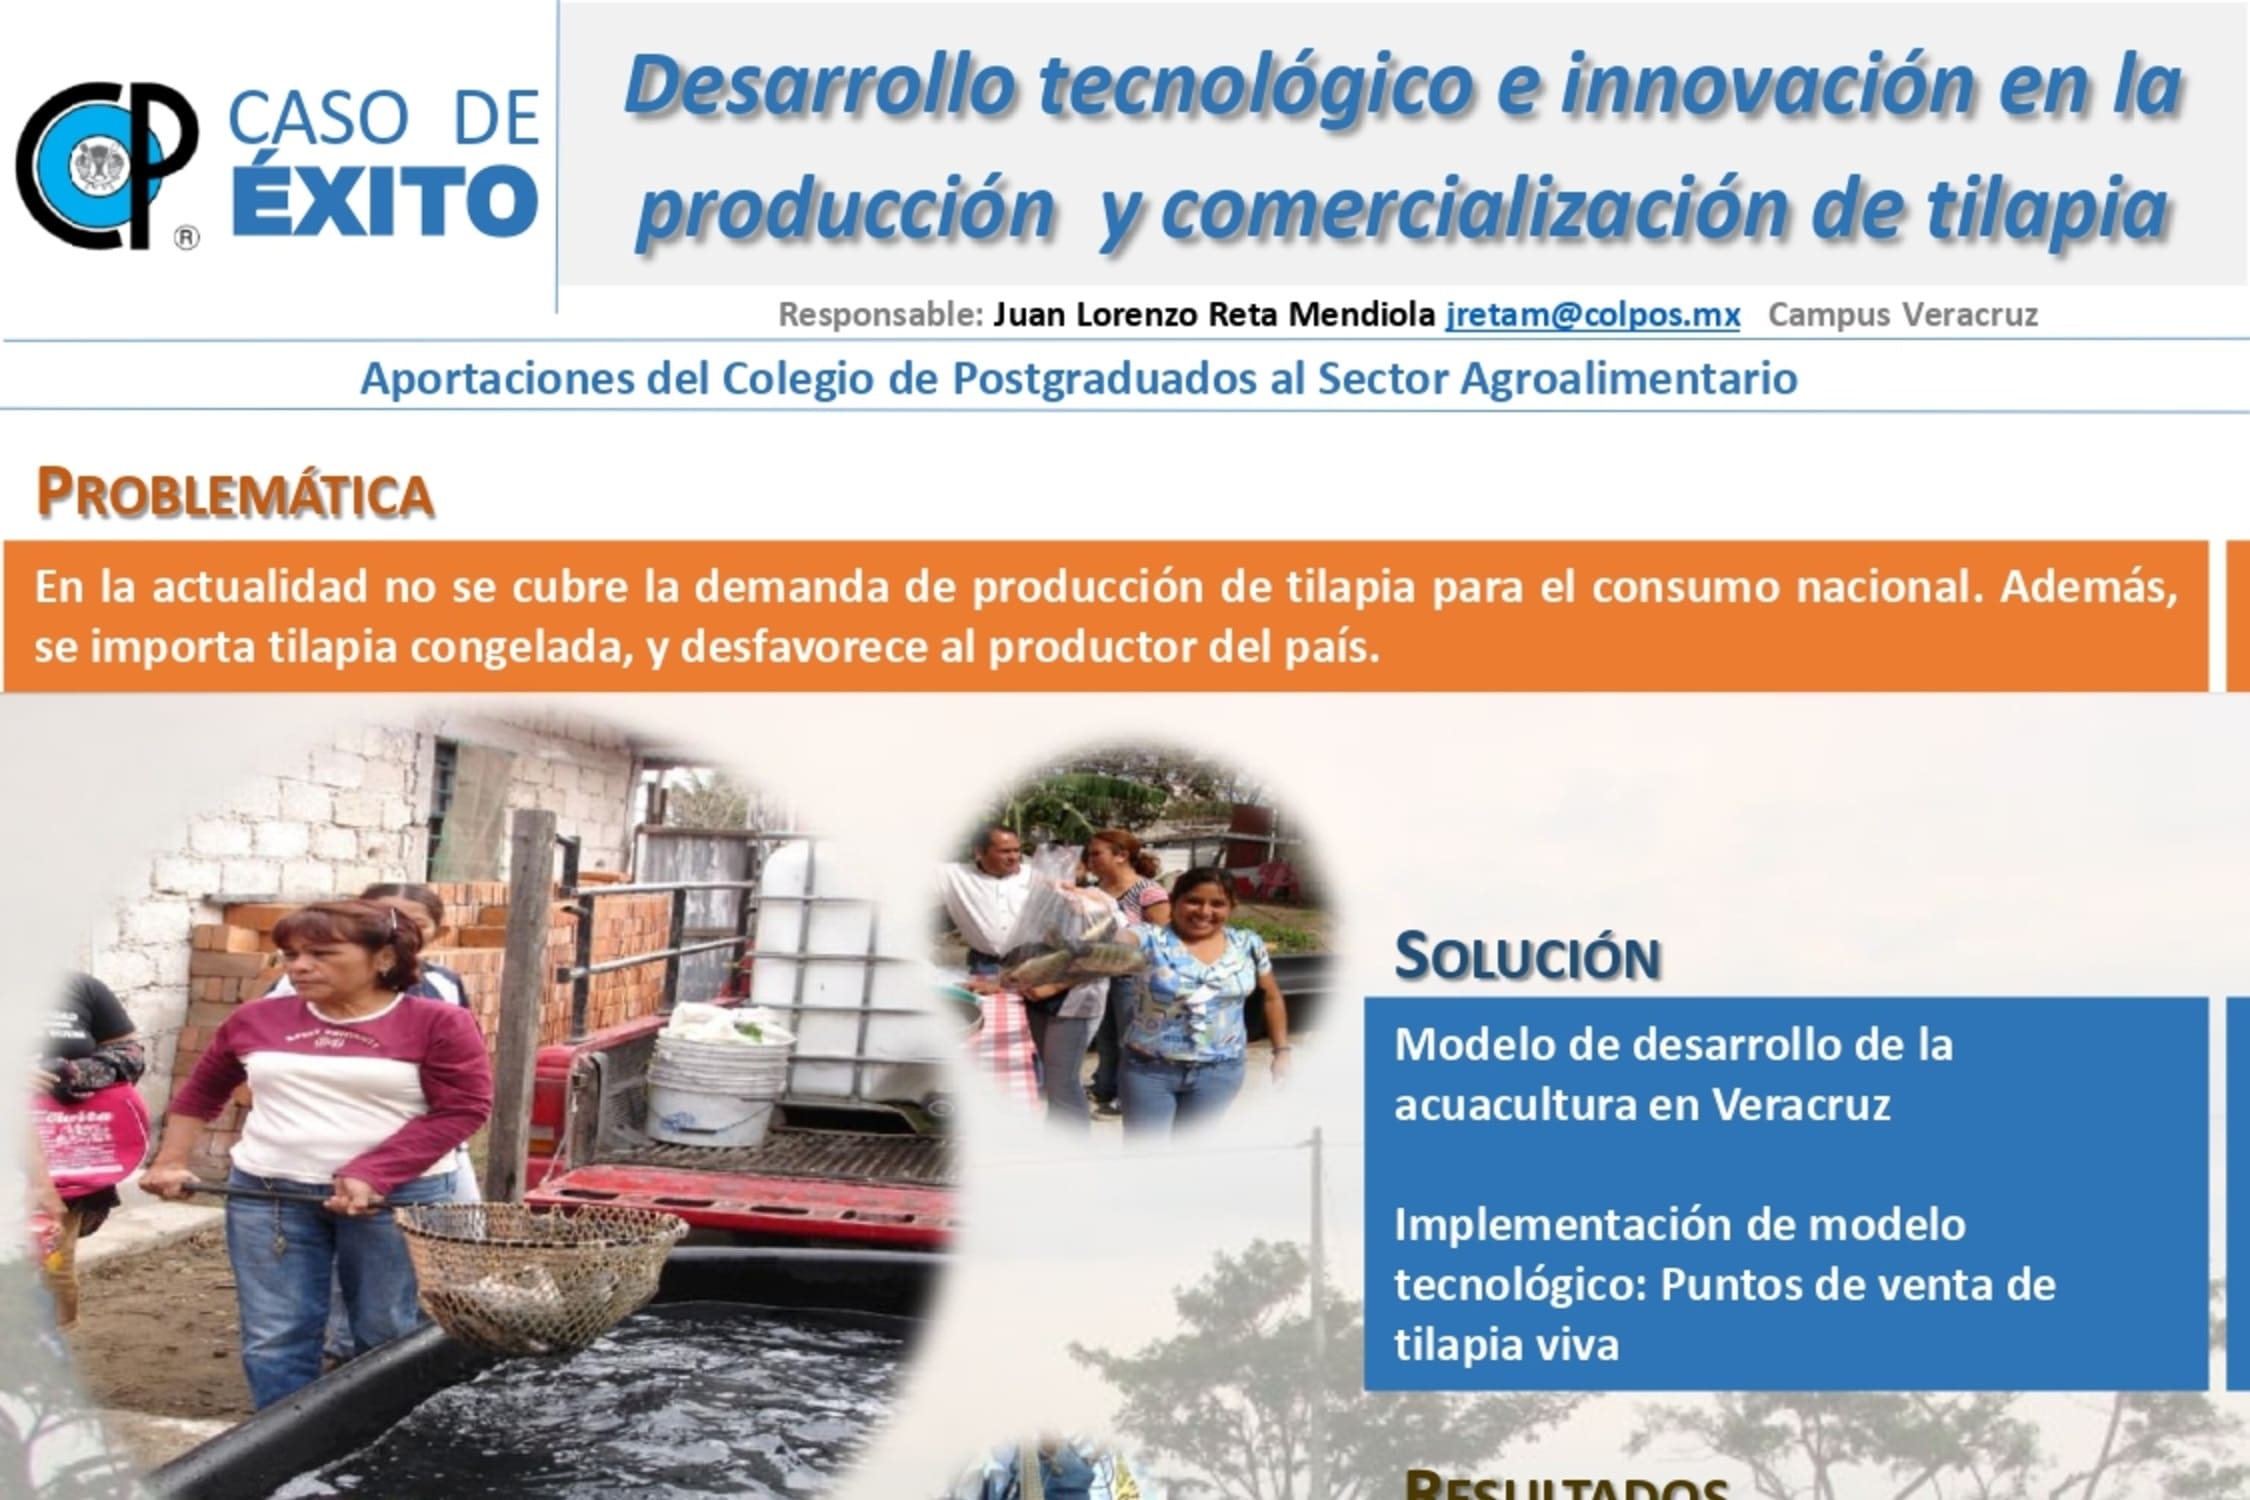 Desarrollo tecnológico e innovación en la producción y comercialización de tilapia.